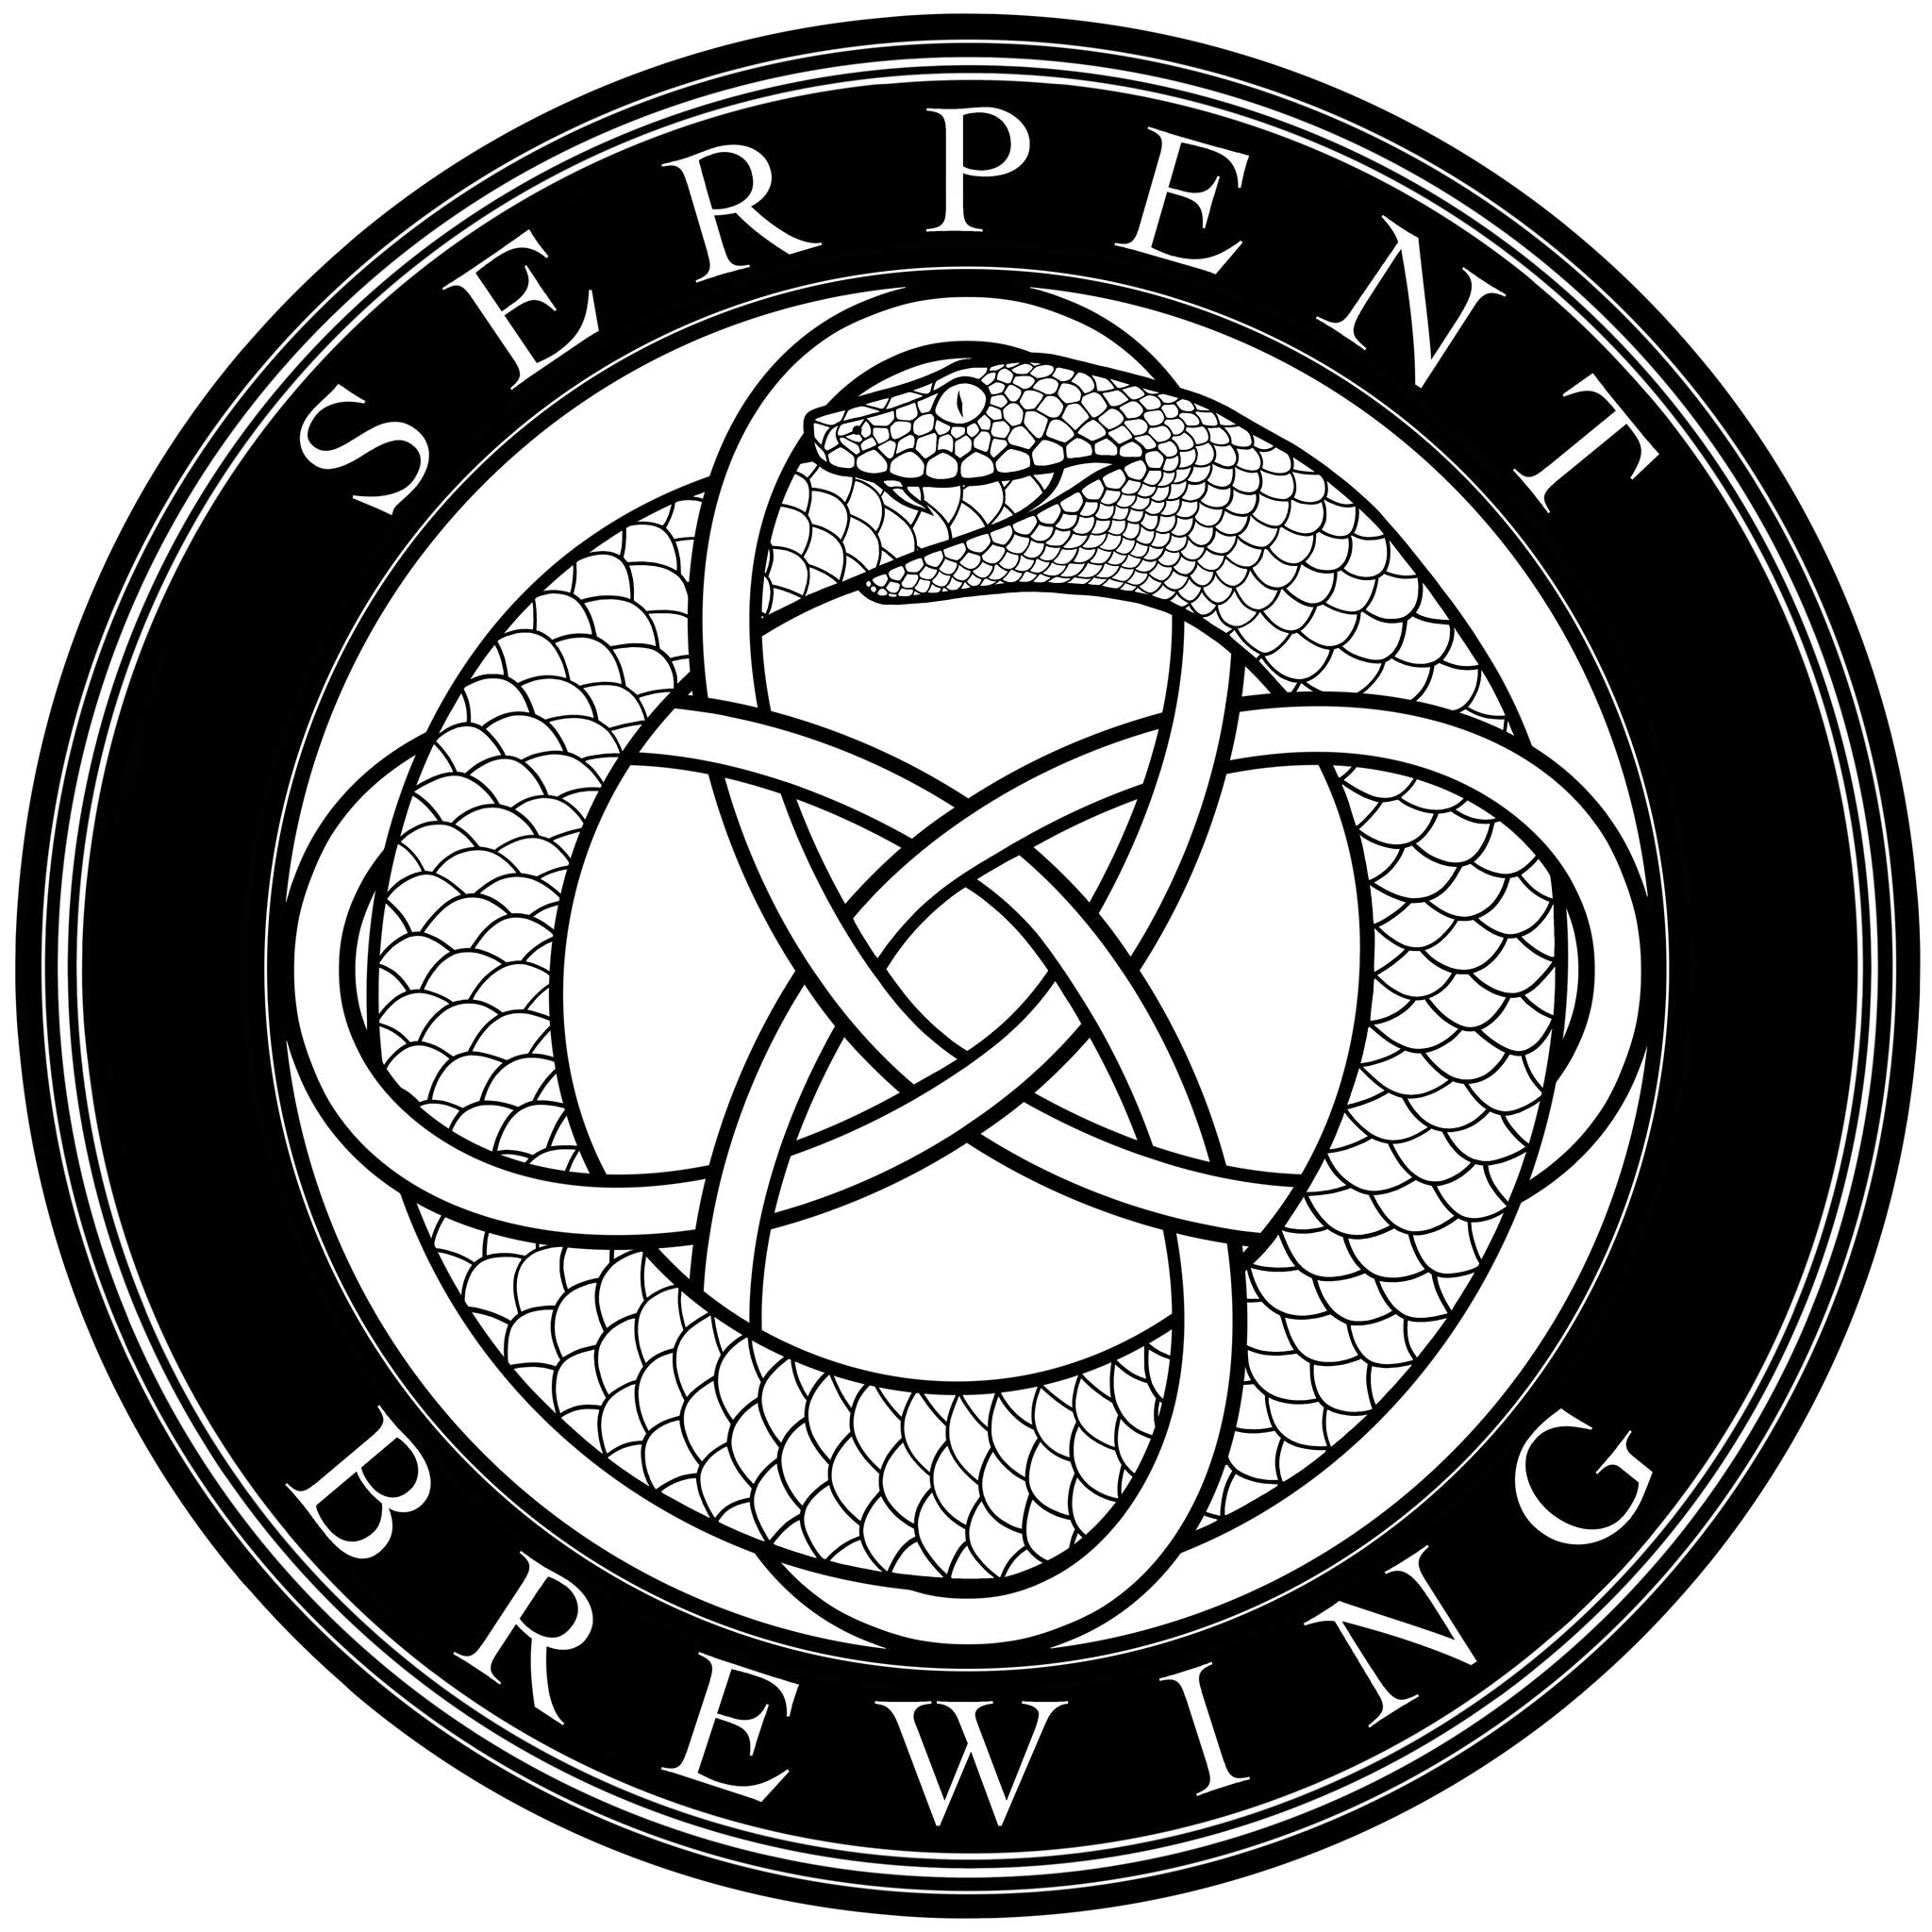 Serpent Brewing